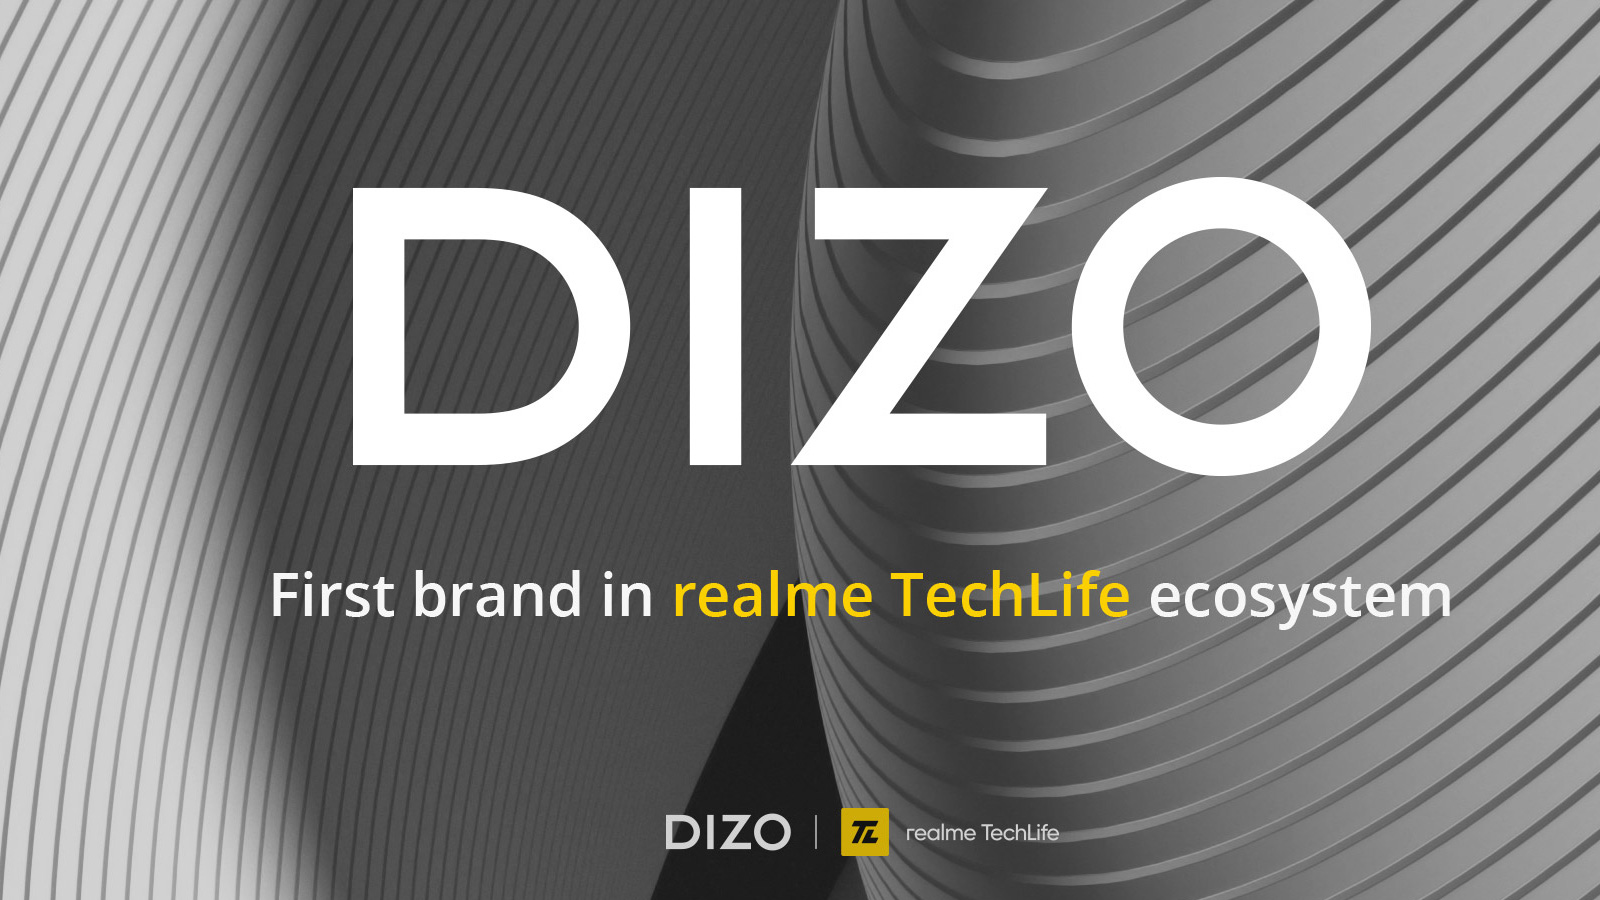 Realme объявила DIZO первым глобальным брендом в экосистеме TechLife